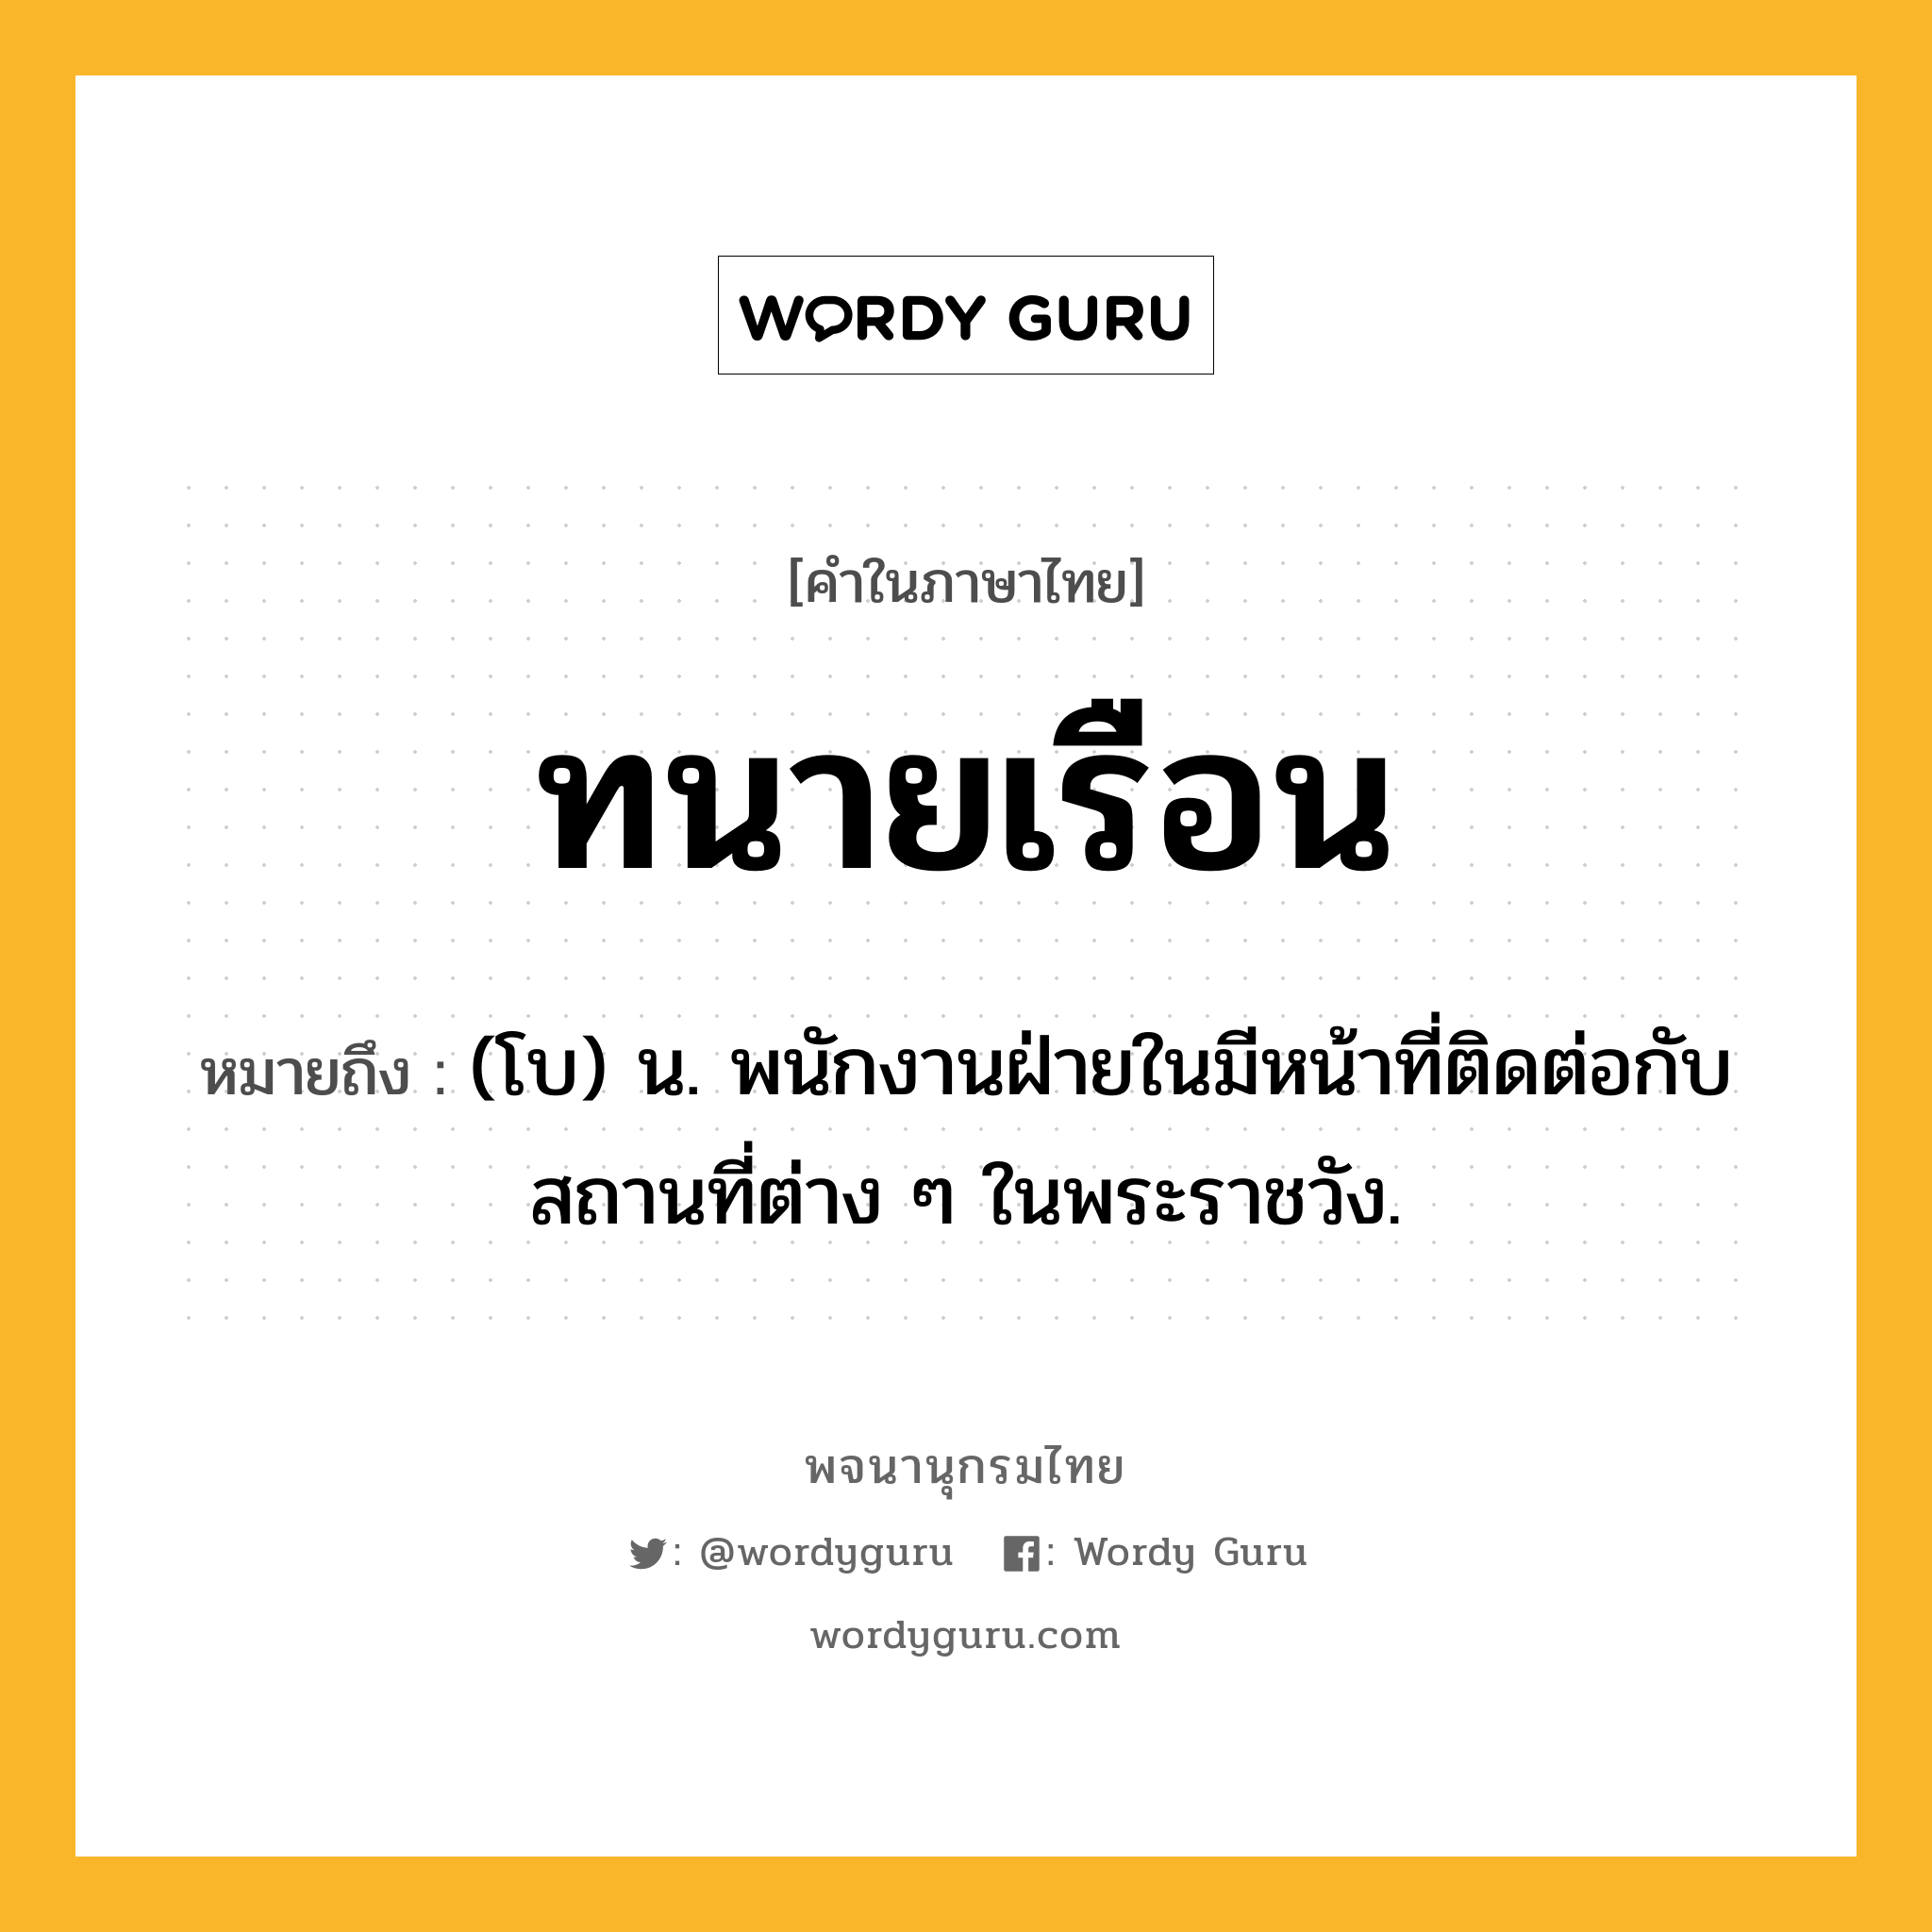 ทนายเรือน ความหมาย หมายถึงอะไร?, คำในภาษาไทย ทนายเรือน หมายถึง (โบ) น. พนักงานฝ่ายในมีหน้าที่ติดต่อกับสถานที่ต่าง ๆ ในพระราชวัง.